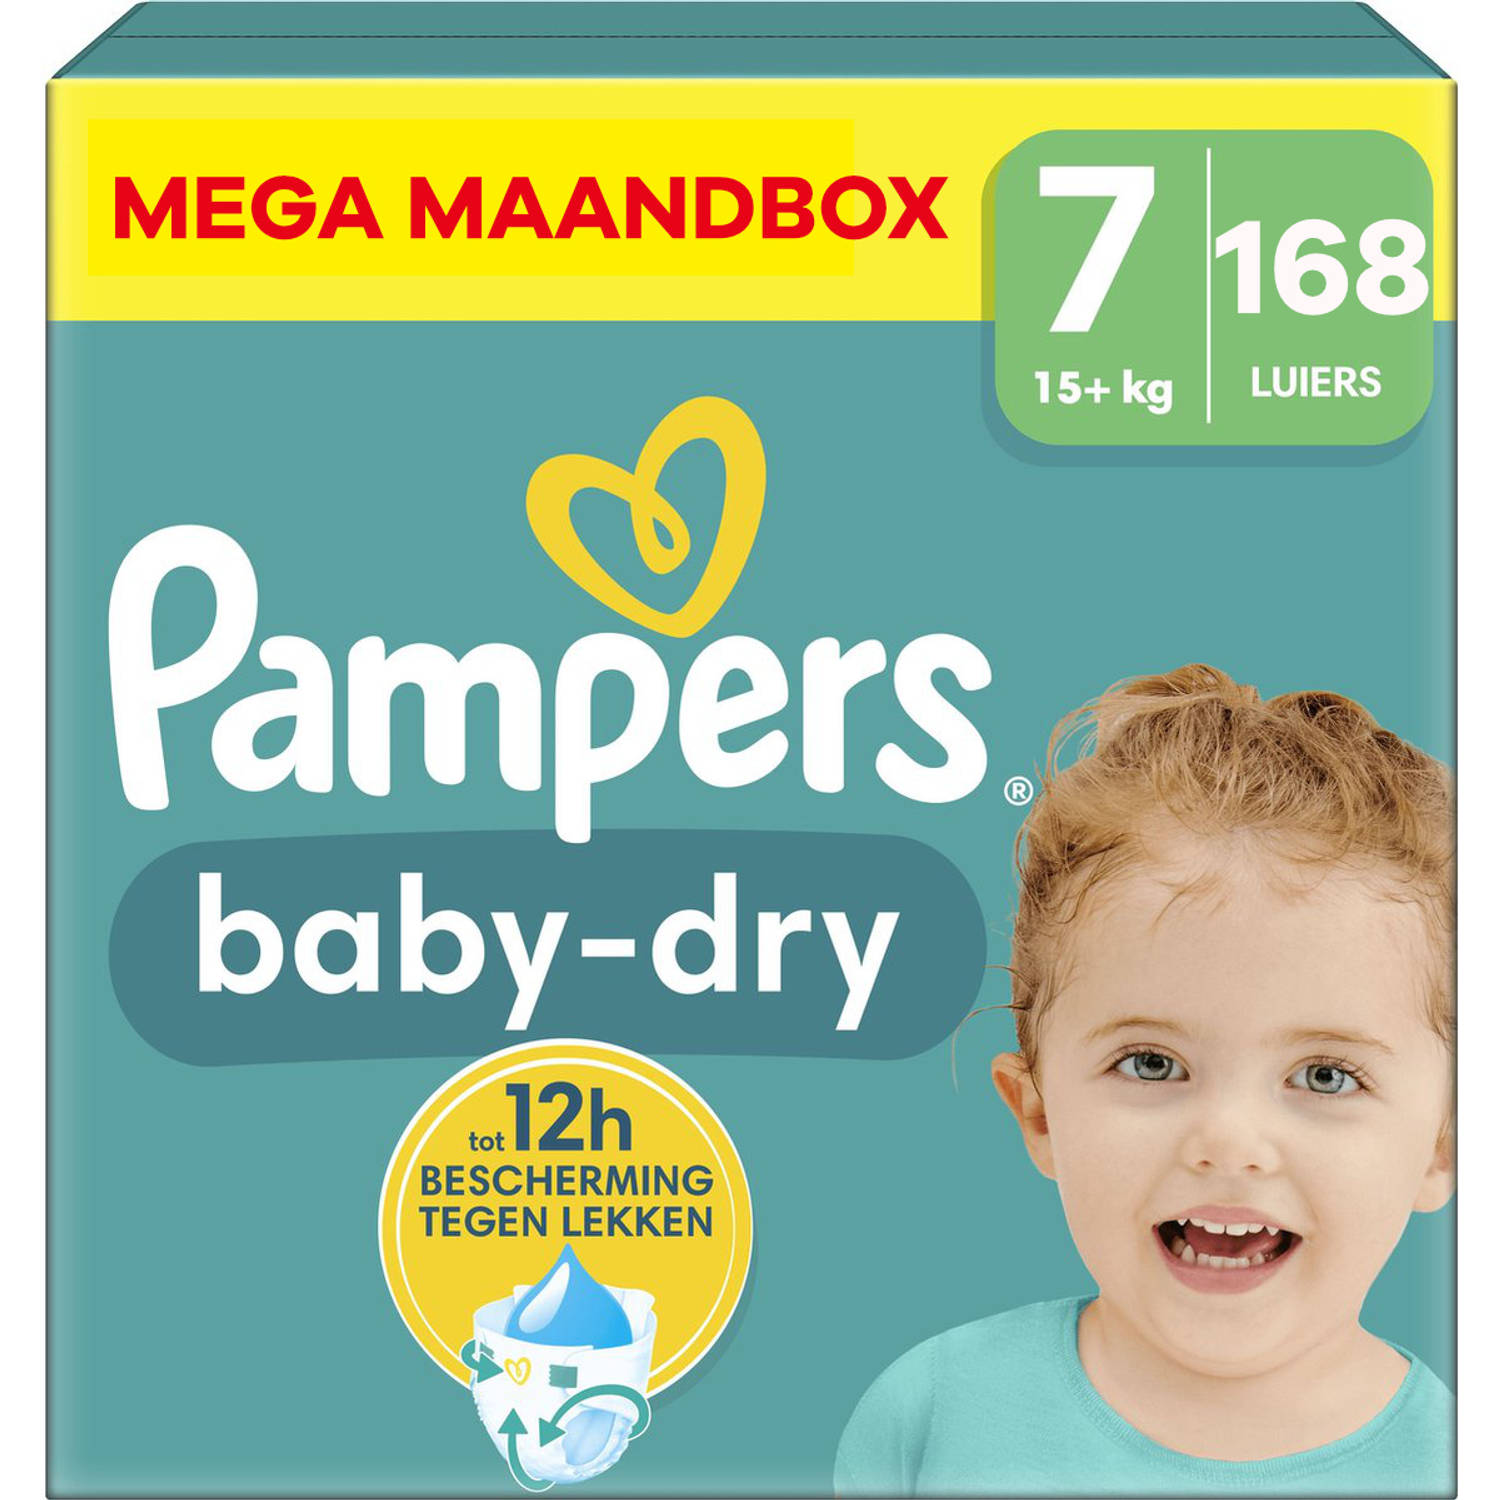 Pampers Baby Dry Maat 7 Mega Maandbox 168 stuks 15+ KG